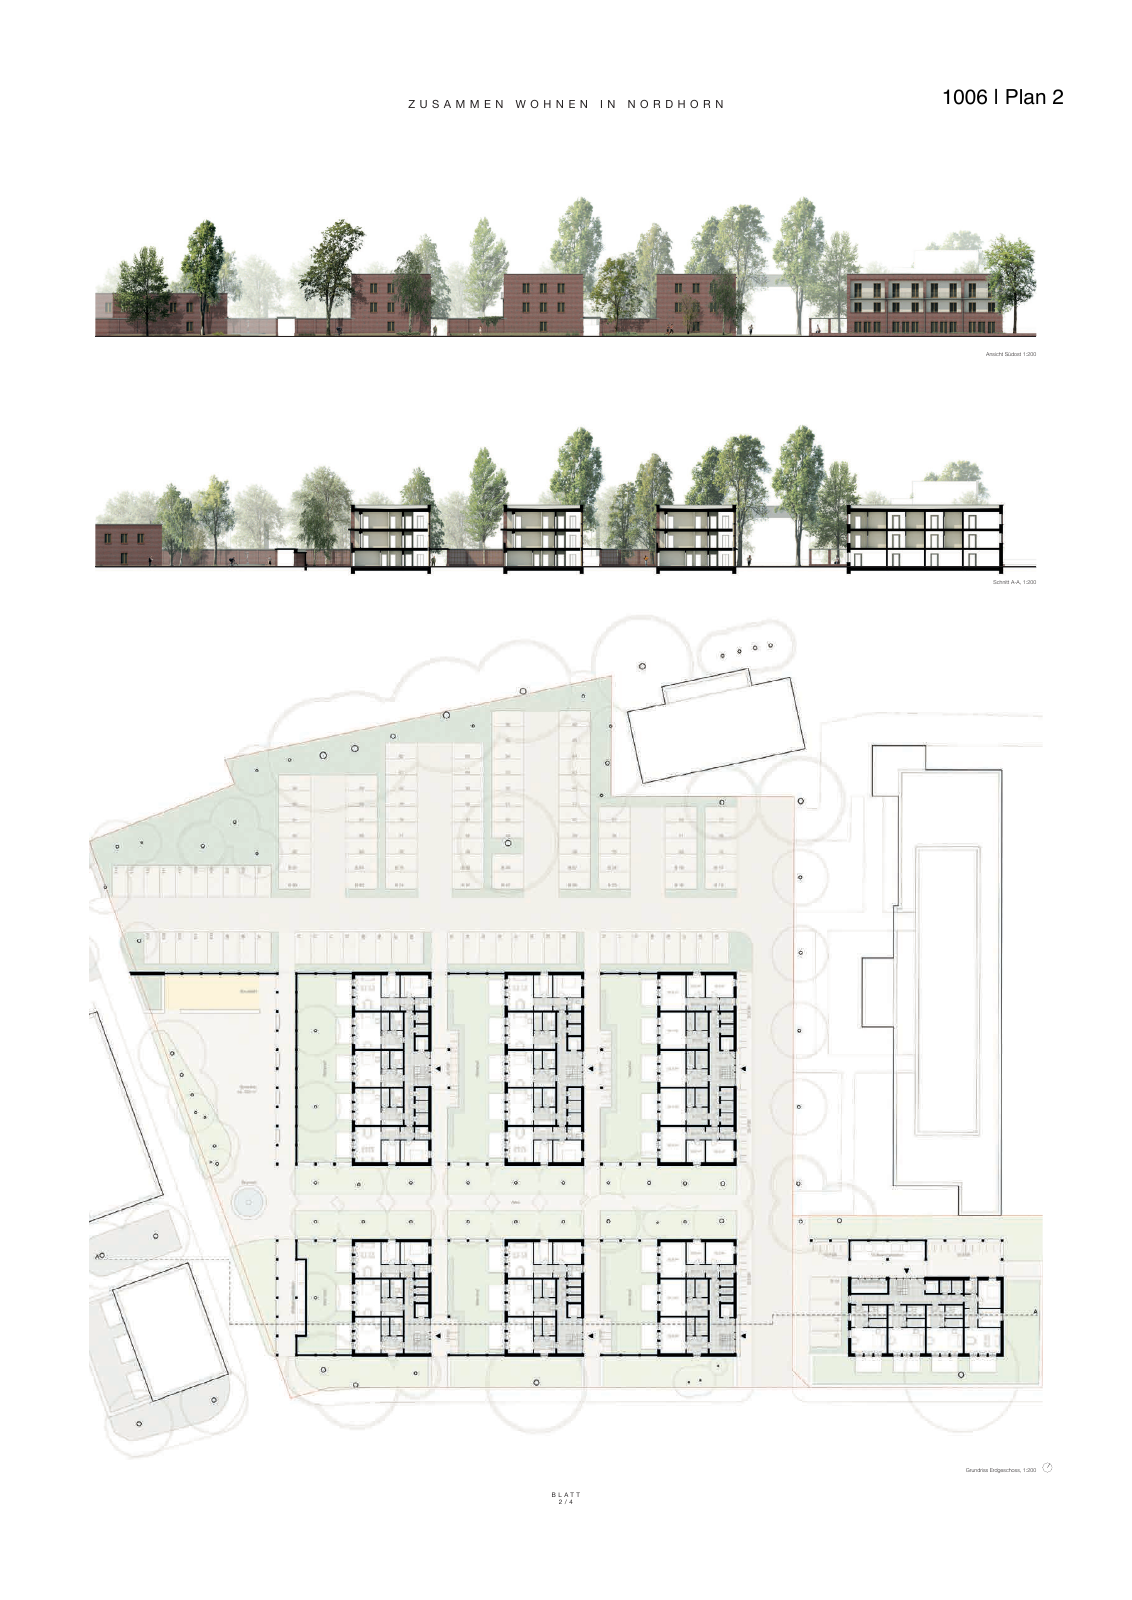 Vorschau Neubau von 100 Wohneinheiten [Nordhorn] Seite 5